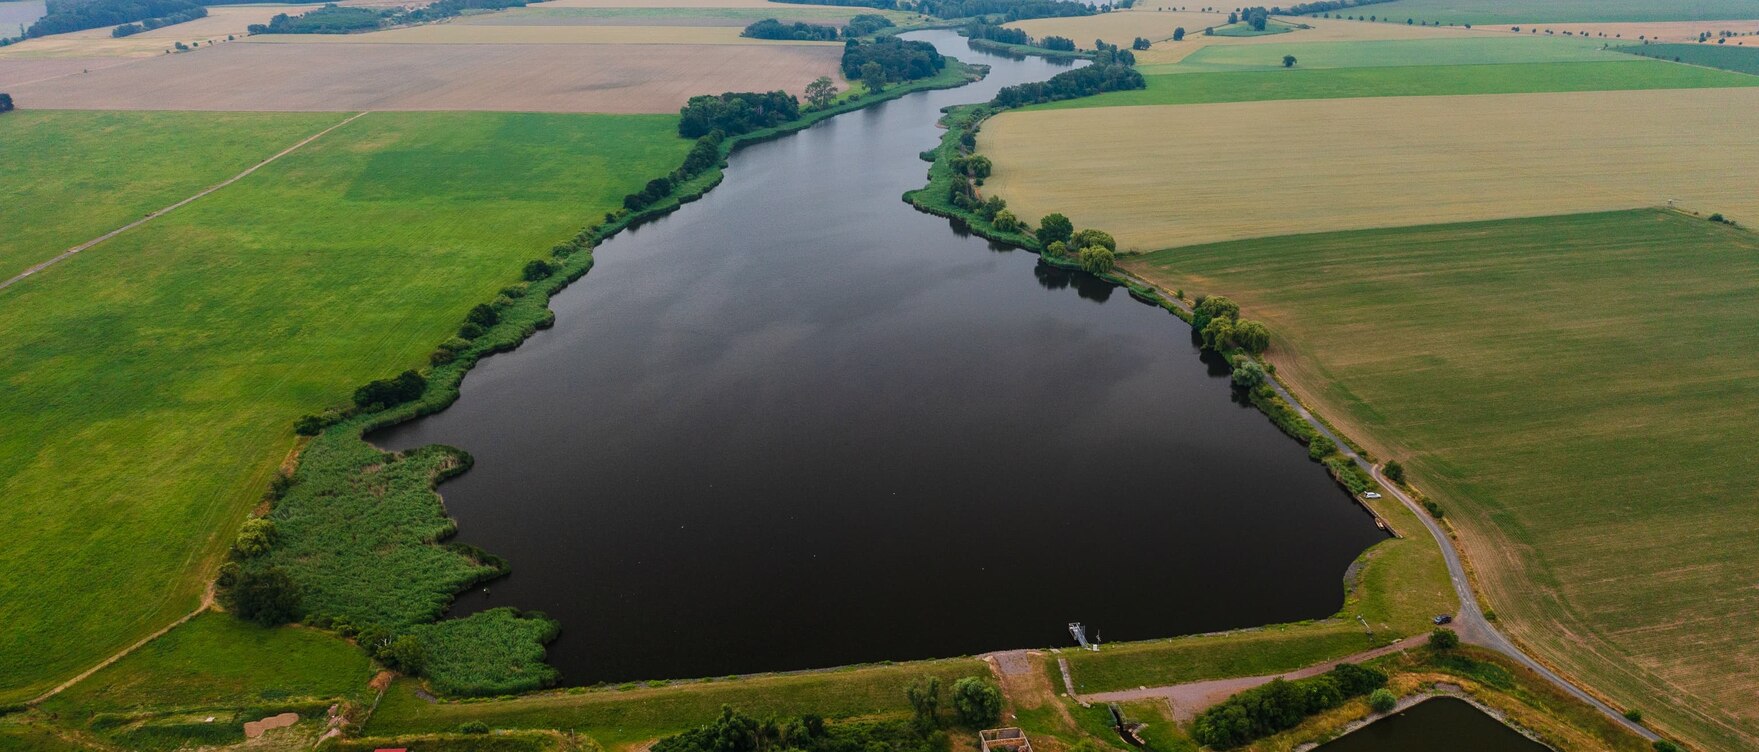 Luftbild der Talsperre - ein See zwischen Feldern